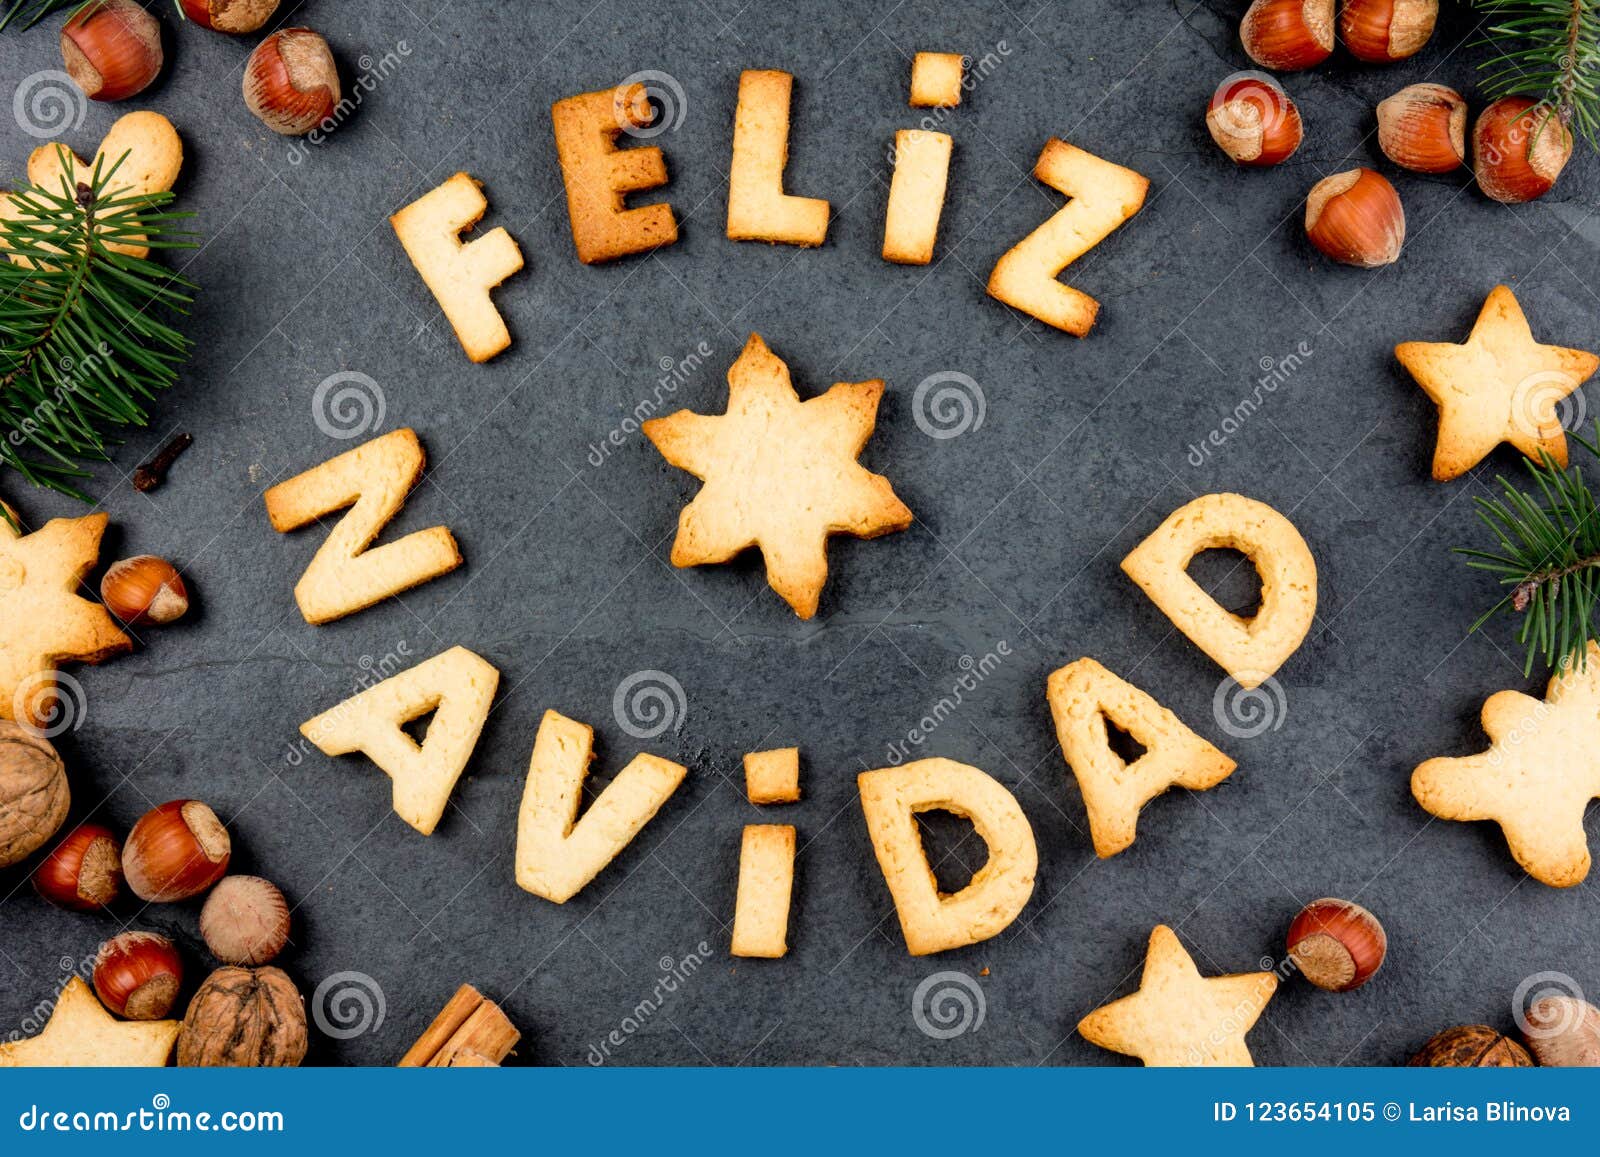 Bánh quy chúc mừng Giáng Sinh tiếng Tây Ban Nha là món quà độc đáo và ý nghĩa trong dịp Giáng Sinh. Hình ảnh cho thấy những chiếc bánh quy được trang trí đẹp mắt với lời chúc mừng Giáng Sinh bằng tiếng Tây Ban Nha. Hãy xem hình để có thêm thông tin. 